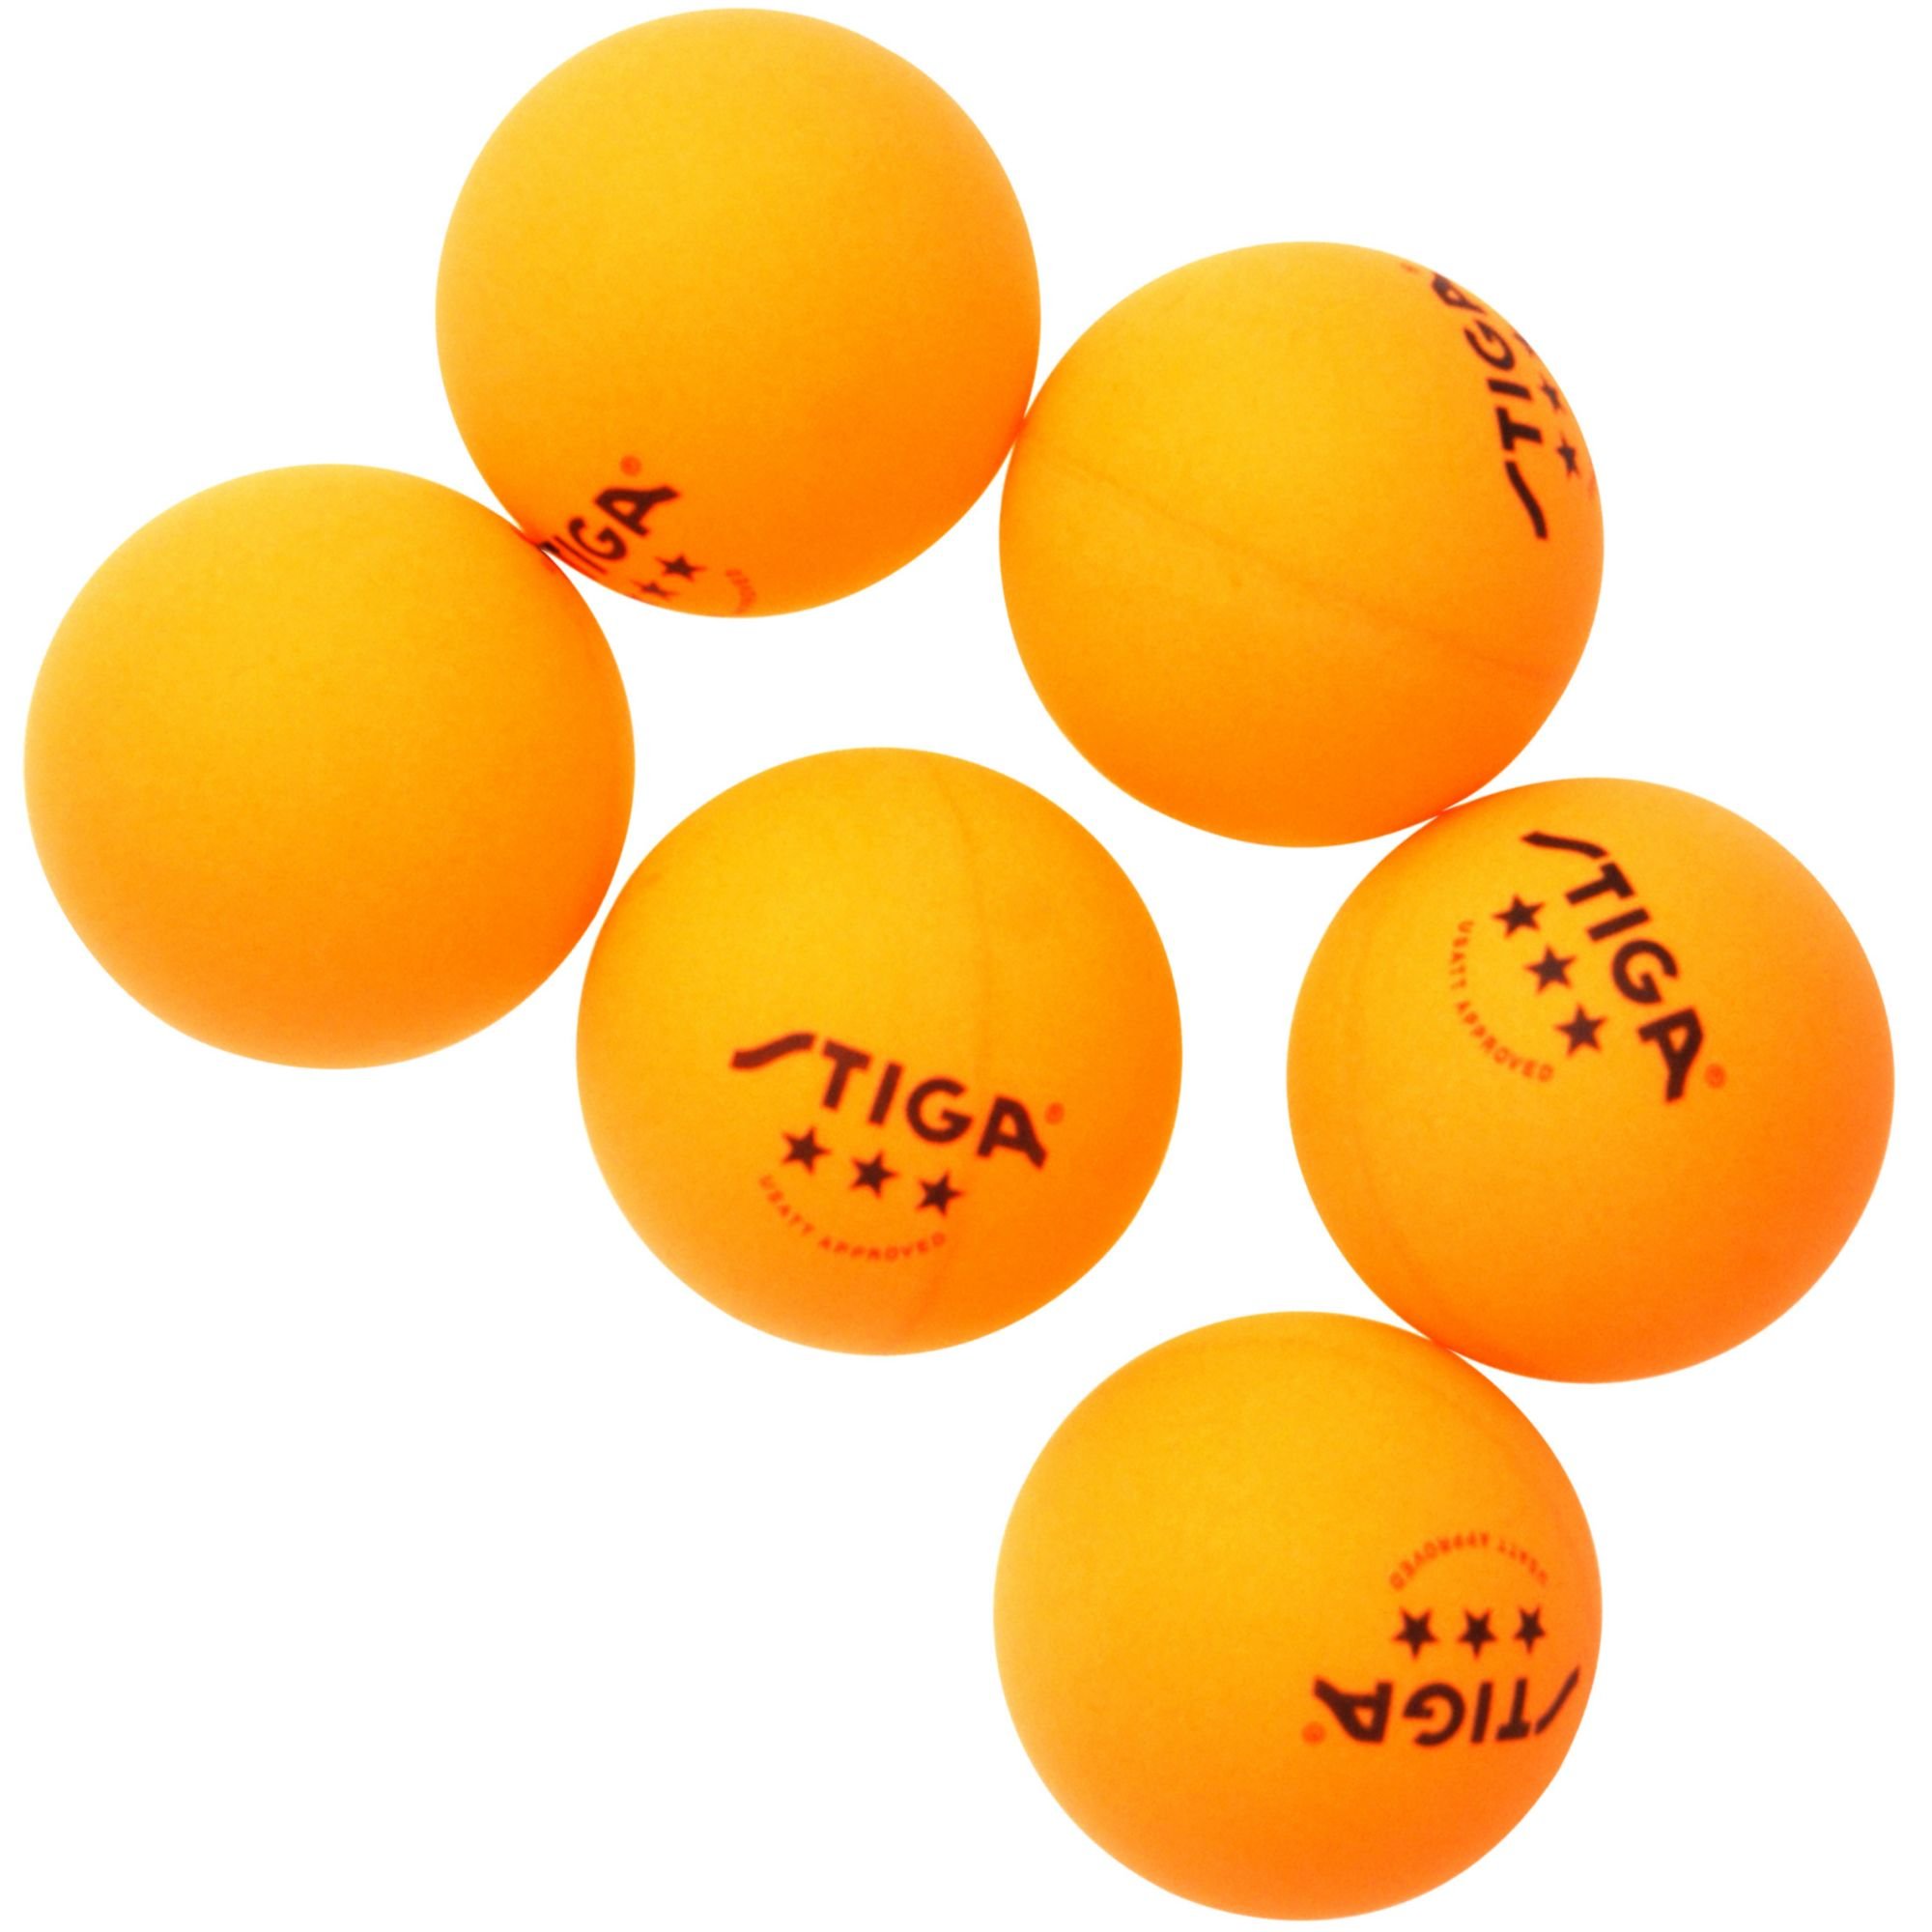 Мячи для настольного тенниса белые. Теннисный мяч пинг понг. Мячи для настольного тенниса Atemi 3, цвет оранжевый, 6 шт. Мячик для настольного тенниса. Мячик для пинпонга.